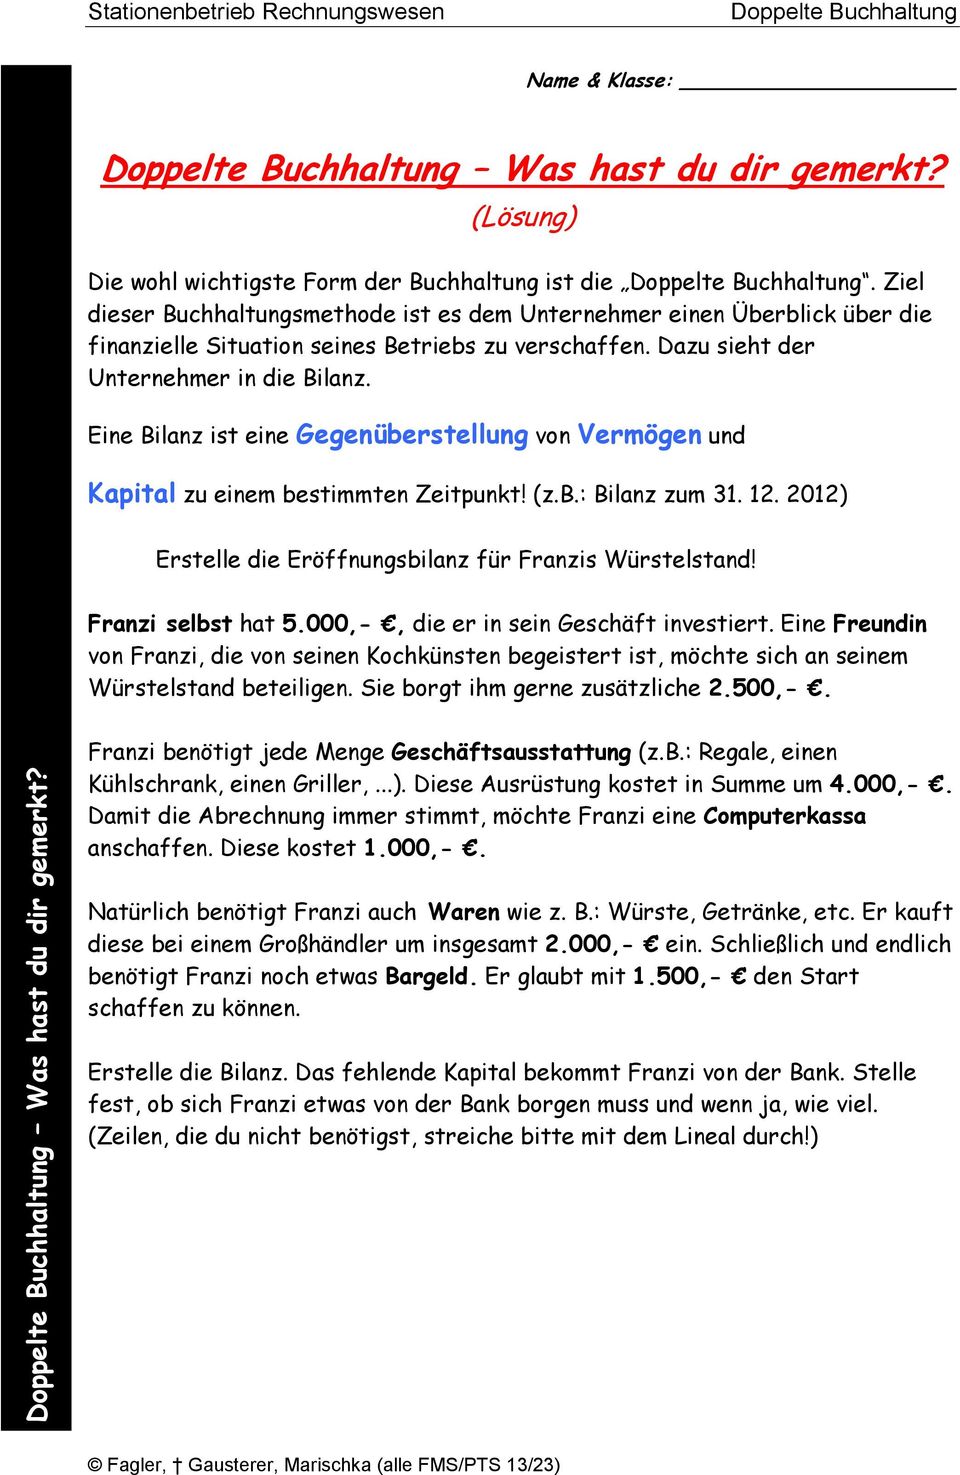 Eine Bilanz ist eine Gegenüberstellung von und zu einem bestimmten Zeitpunkt! (z.b.: Bilanz zum 31. 12. 2012) Erstelle die Eröffnungsbilanz für Franzis Würstelstand! Franzi selbst hat 5.